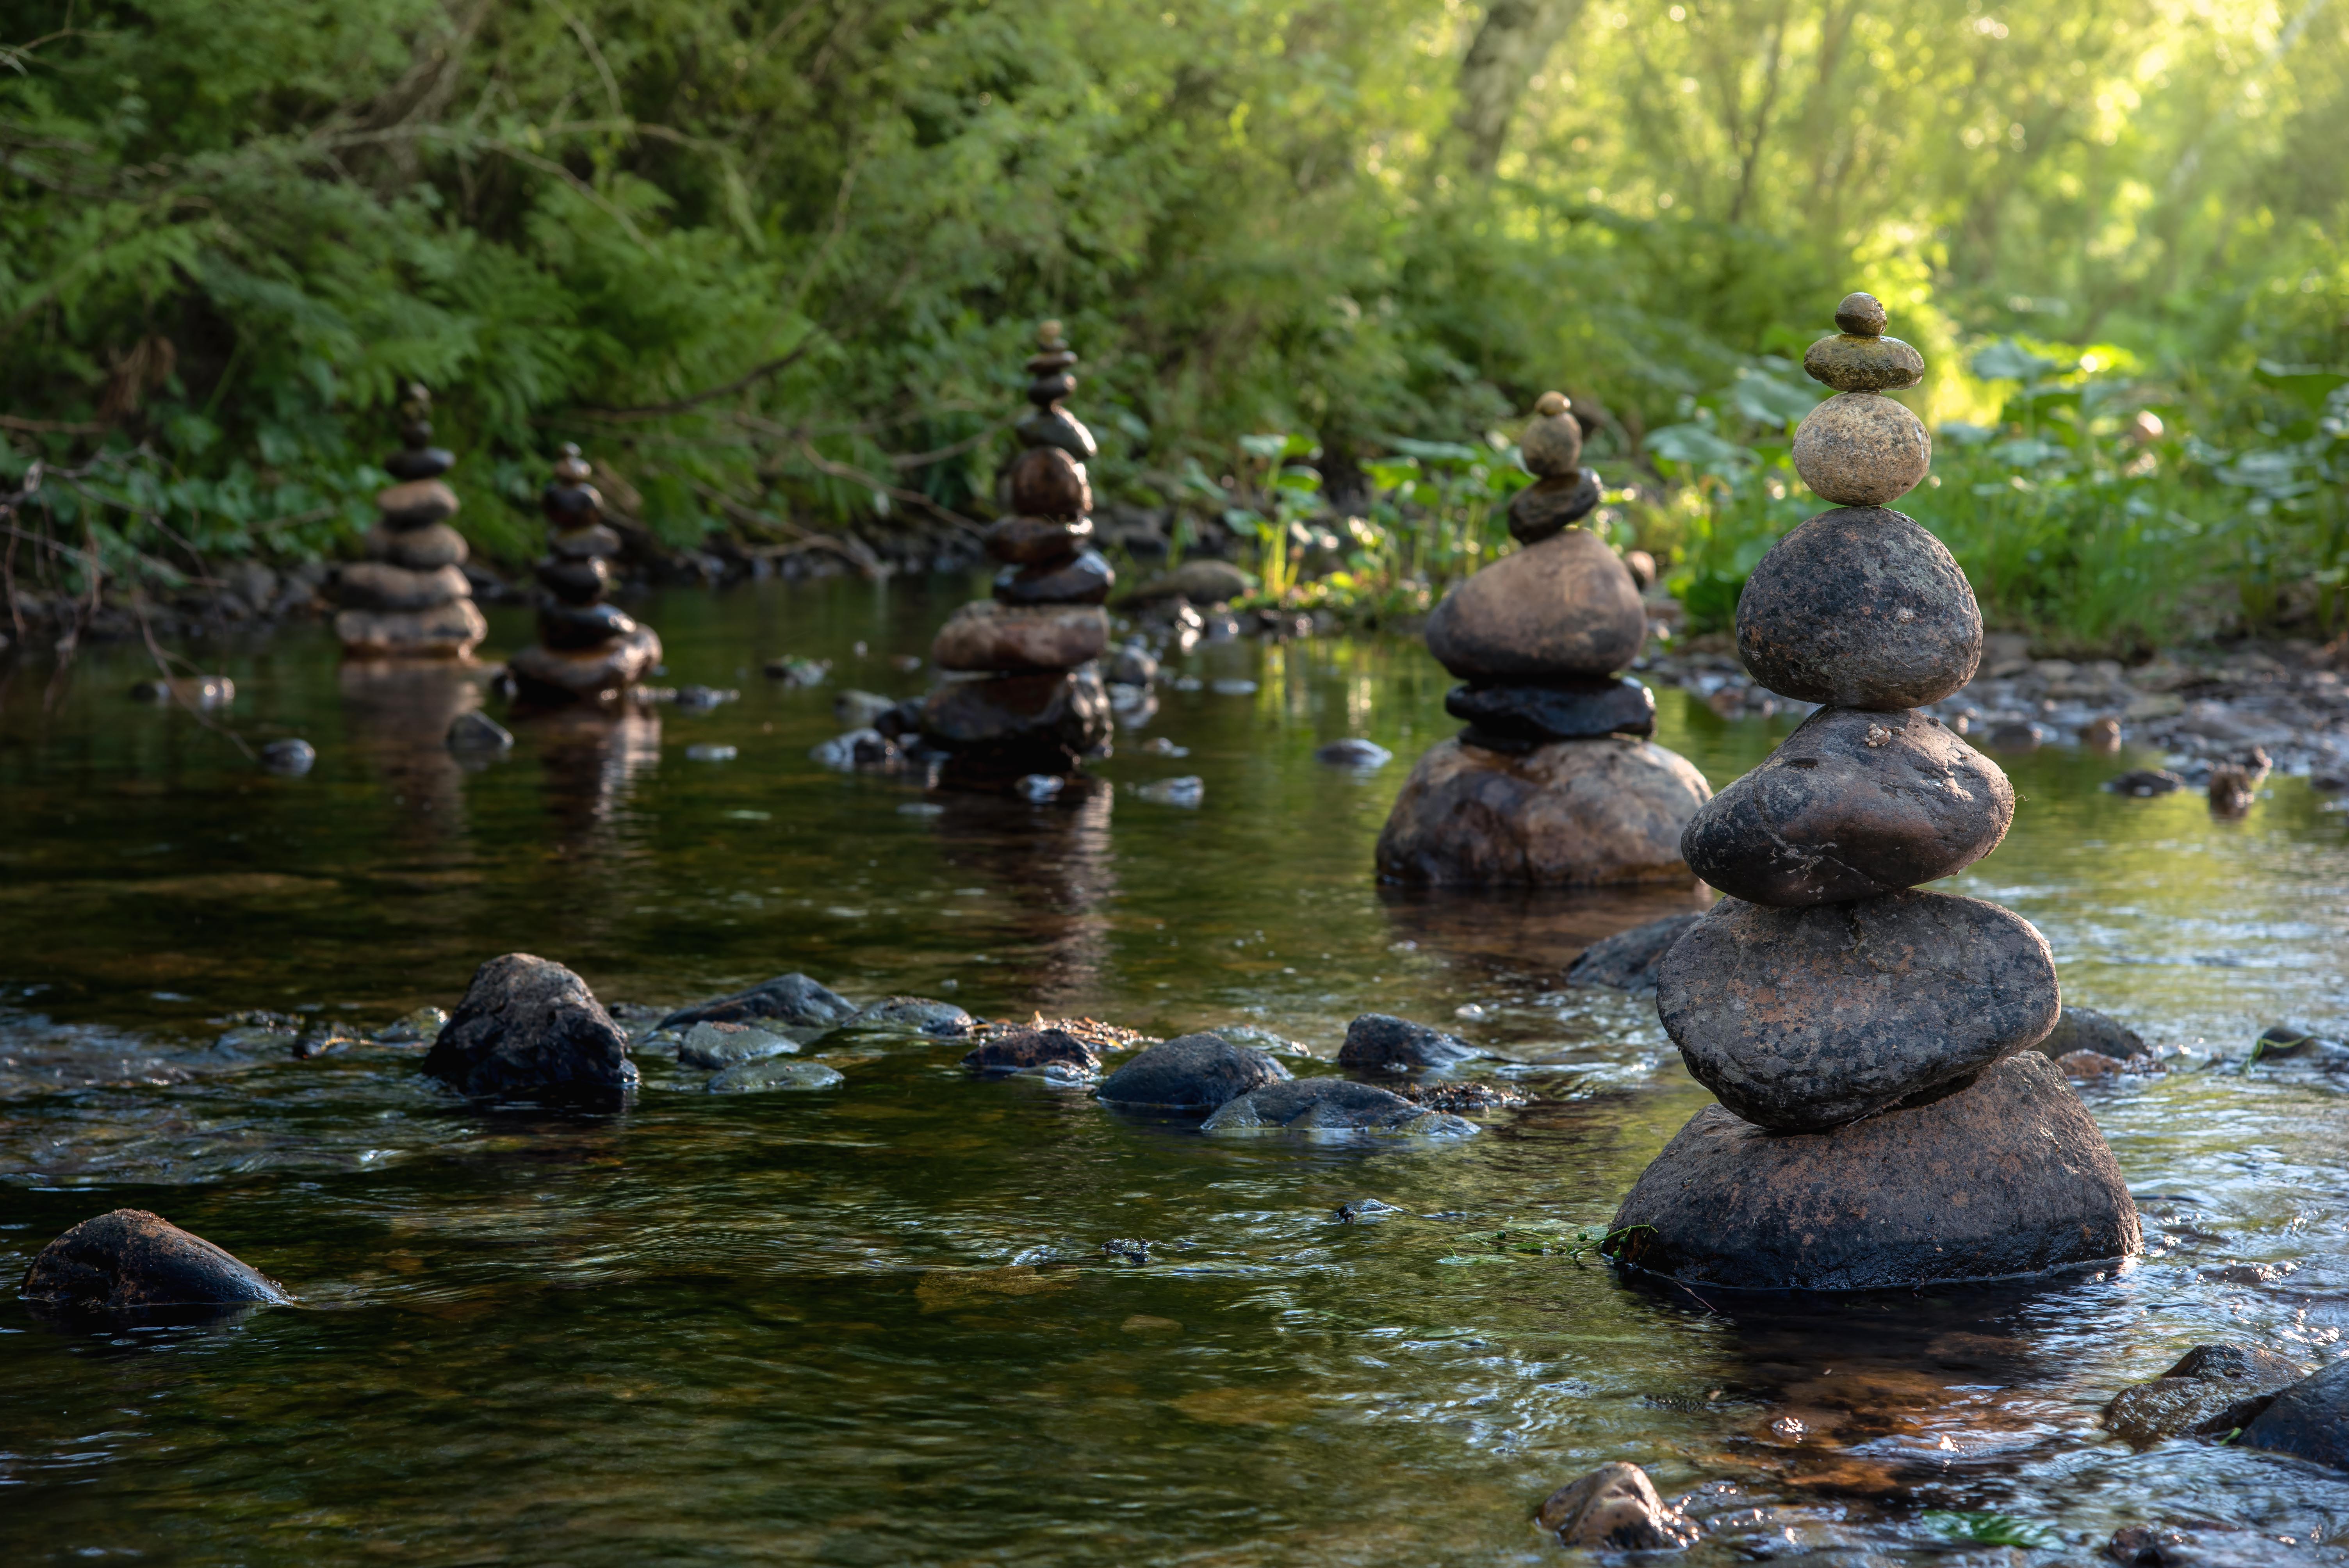 #way #stones #river #summer #landscape #creek #water #tranquility #altai #tigirek #путь #пейзаж #вода #ручей #река #одухотворенность #камни #заповедник #тигирек #природа #алтай #алтайскийкрай #лето #прохлада, Денис Соломахин